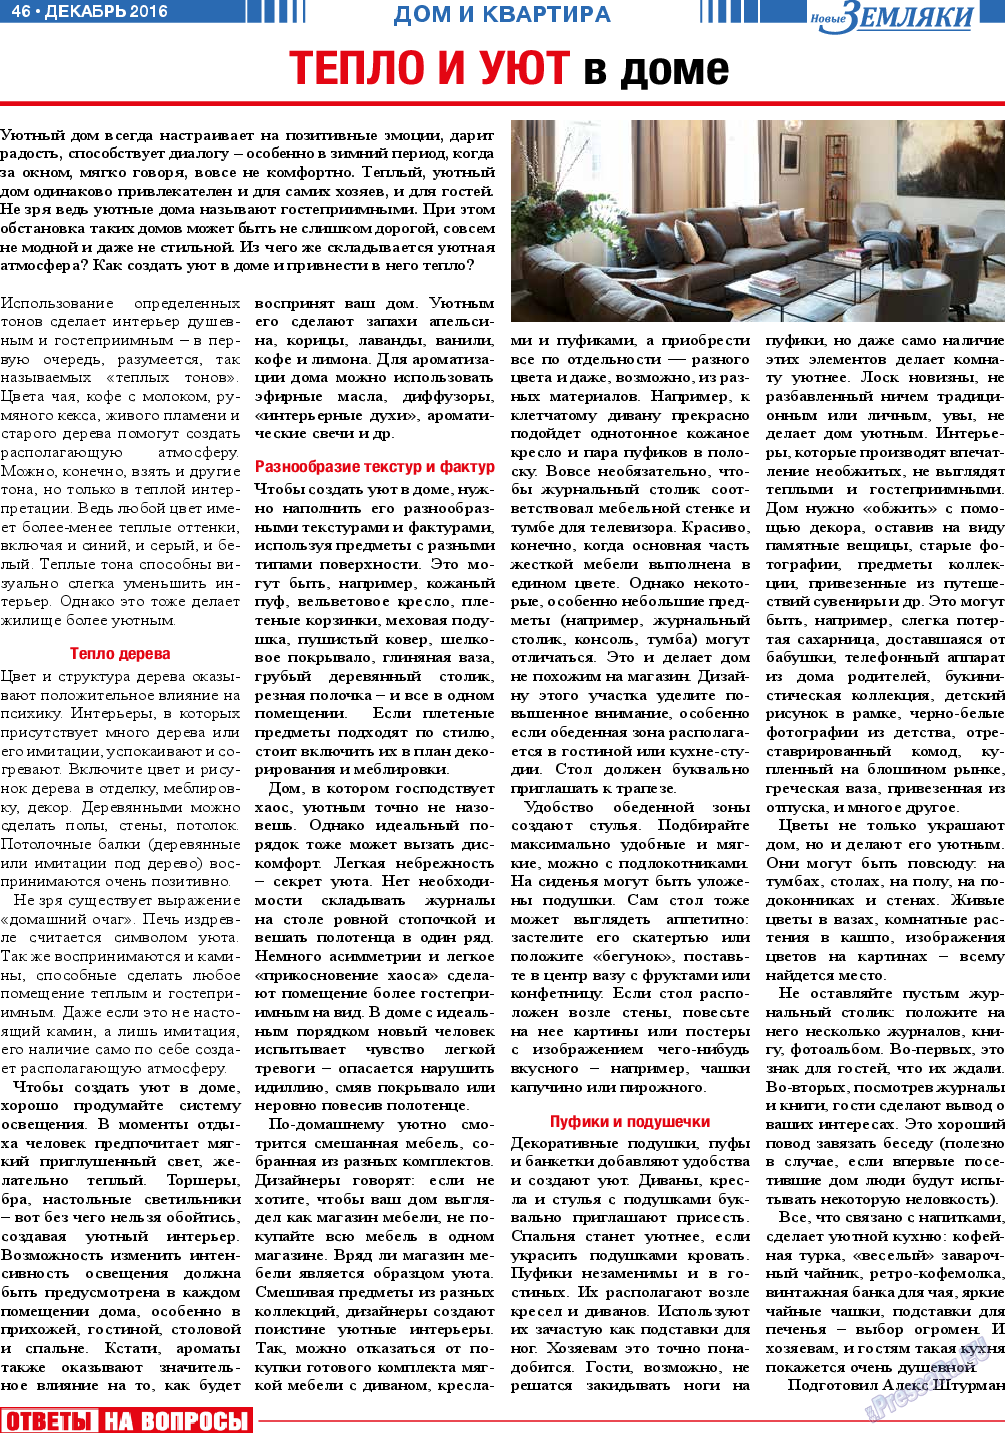 Новые Земляки, газета. 2016 №12 стр.46